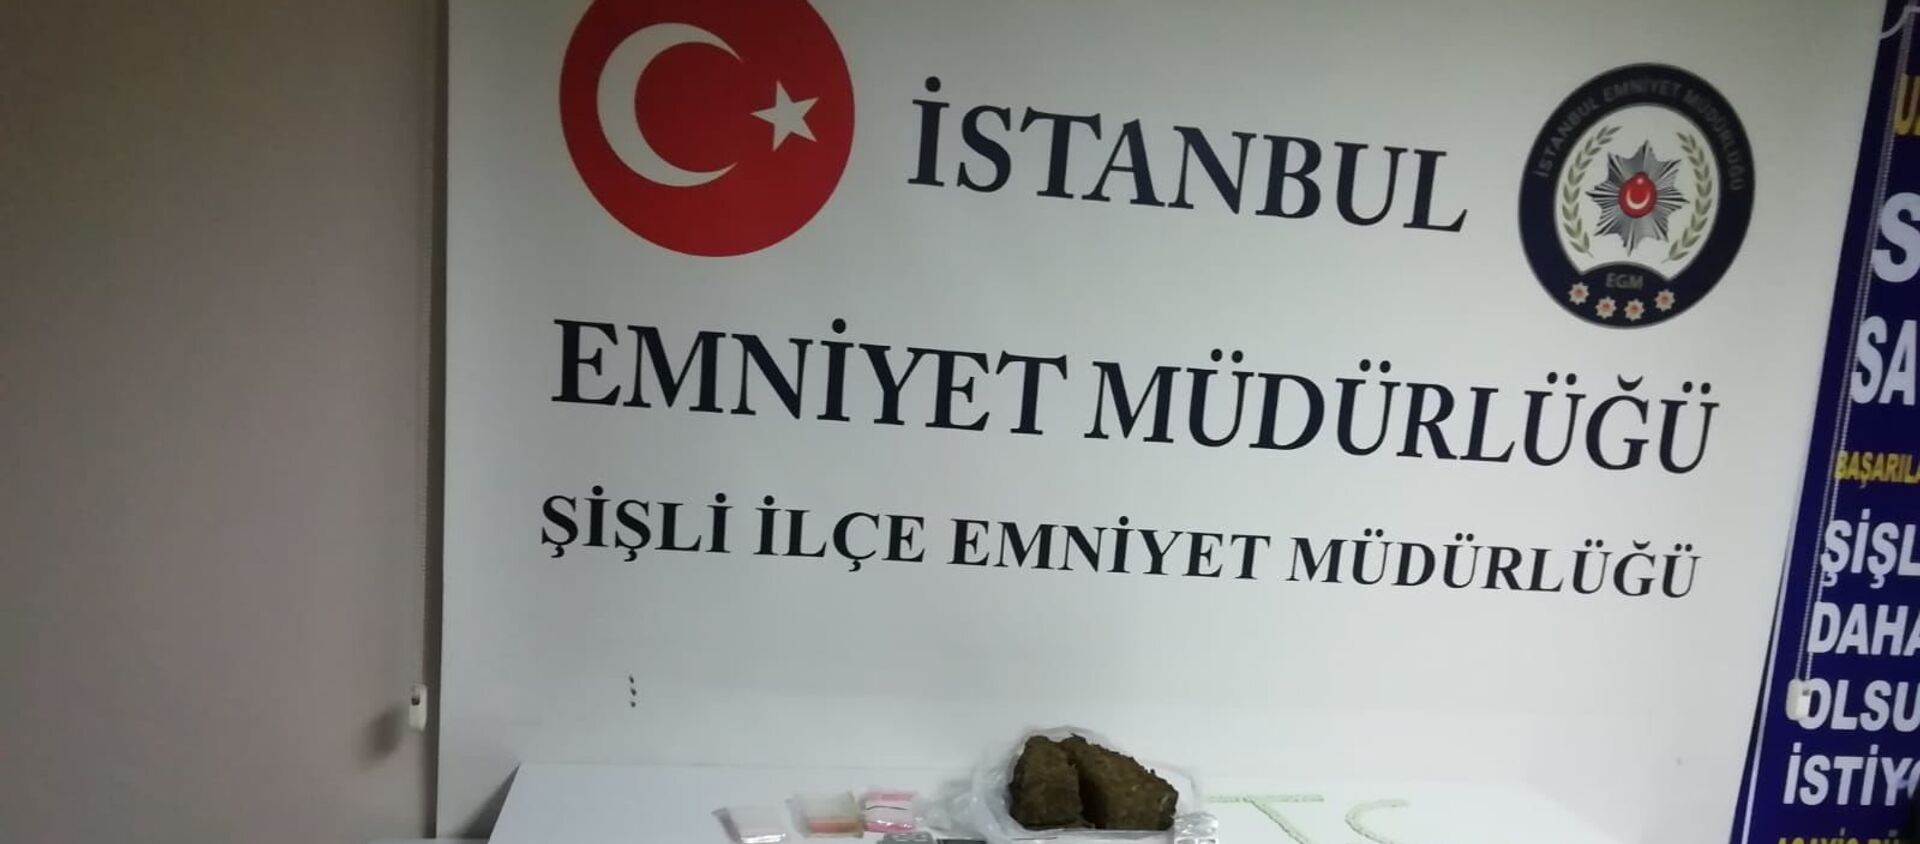 'Gece Kartalları' Kuştepe'de: Bekçiler düzenledikleri uyuşturucu operasyonunda 3 kişiyi yakaladı - Sputnik Türkiye, 1920, 06.02.2020